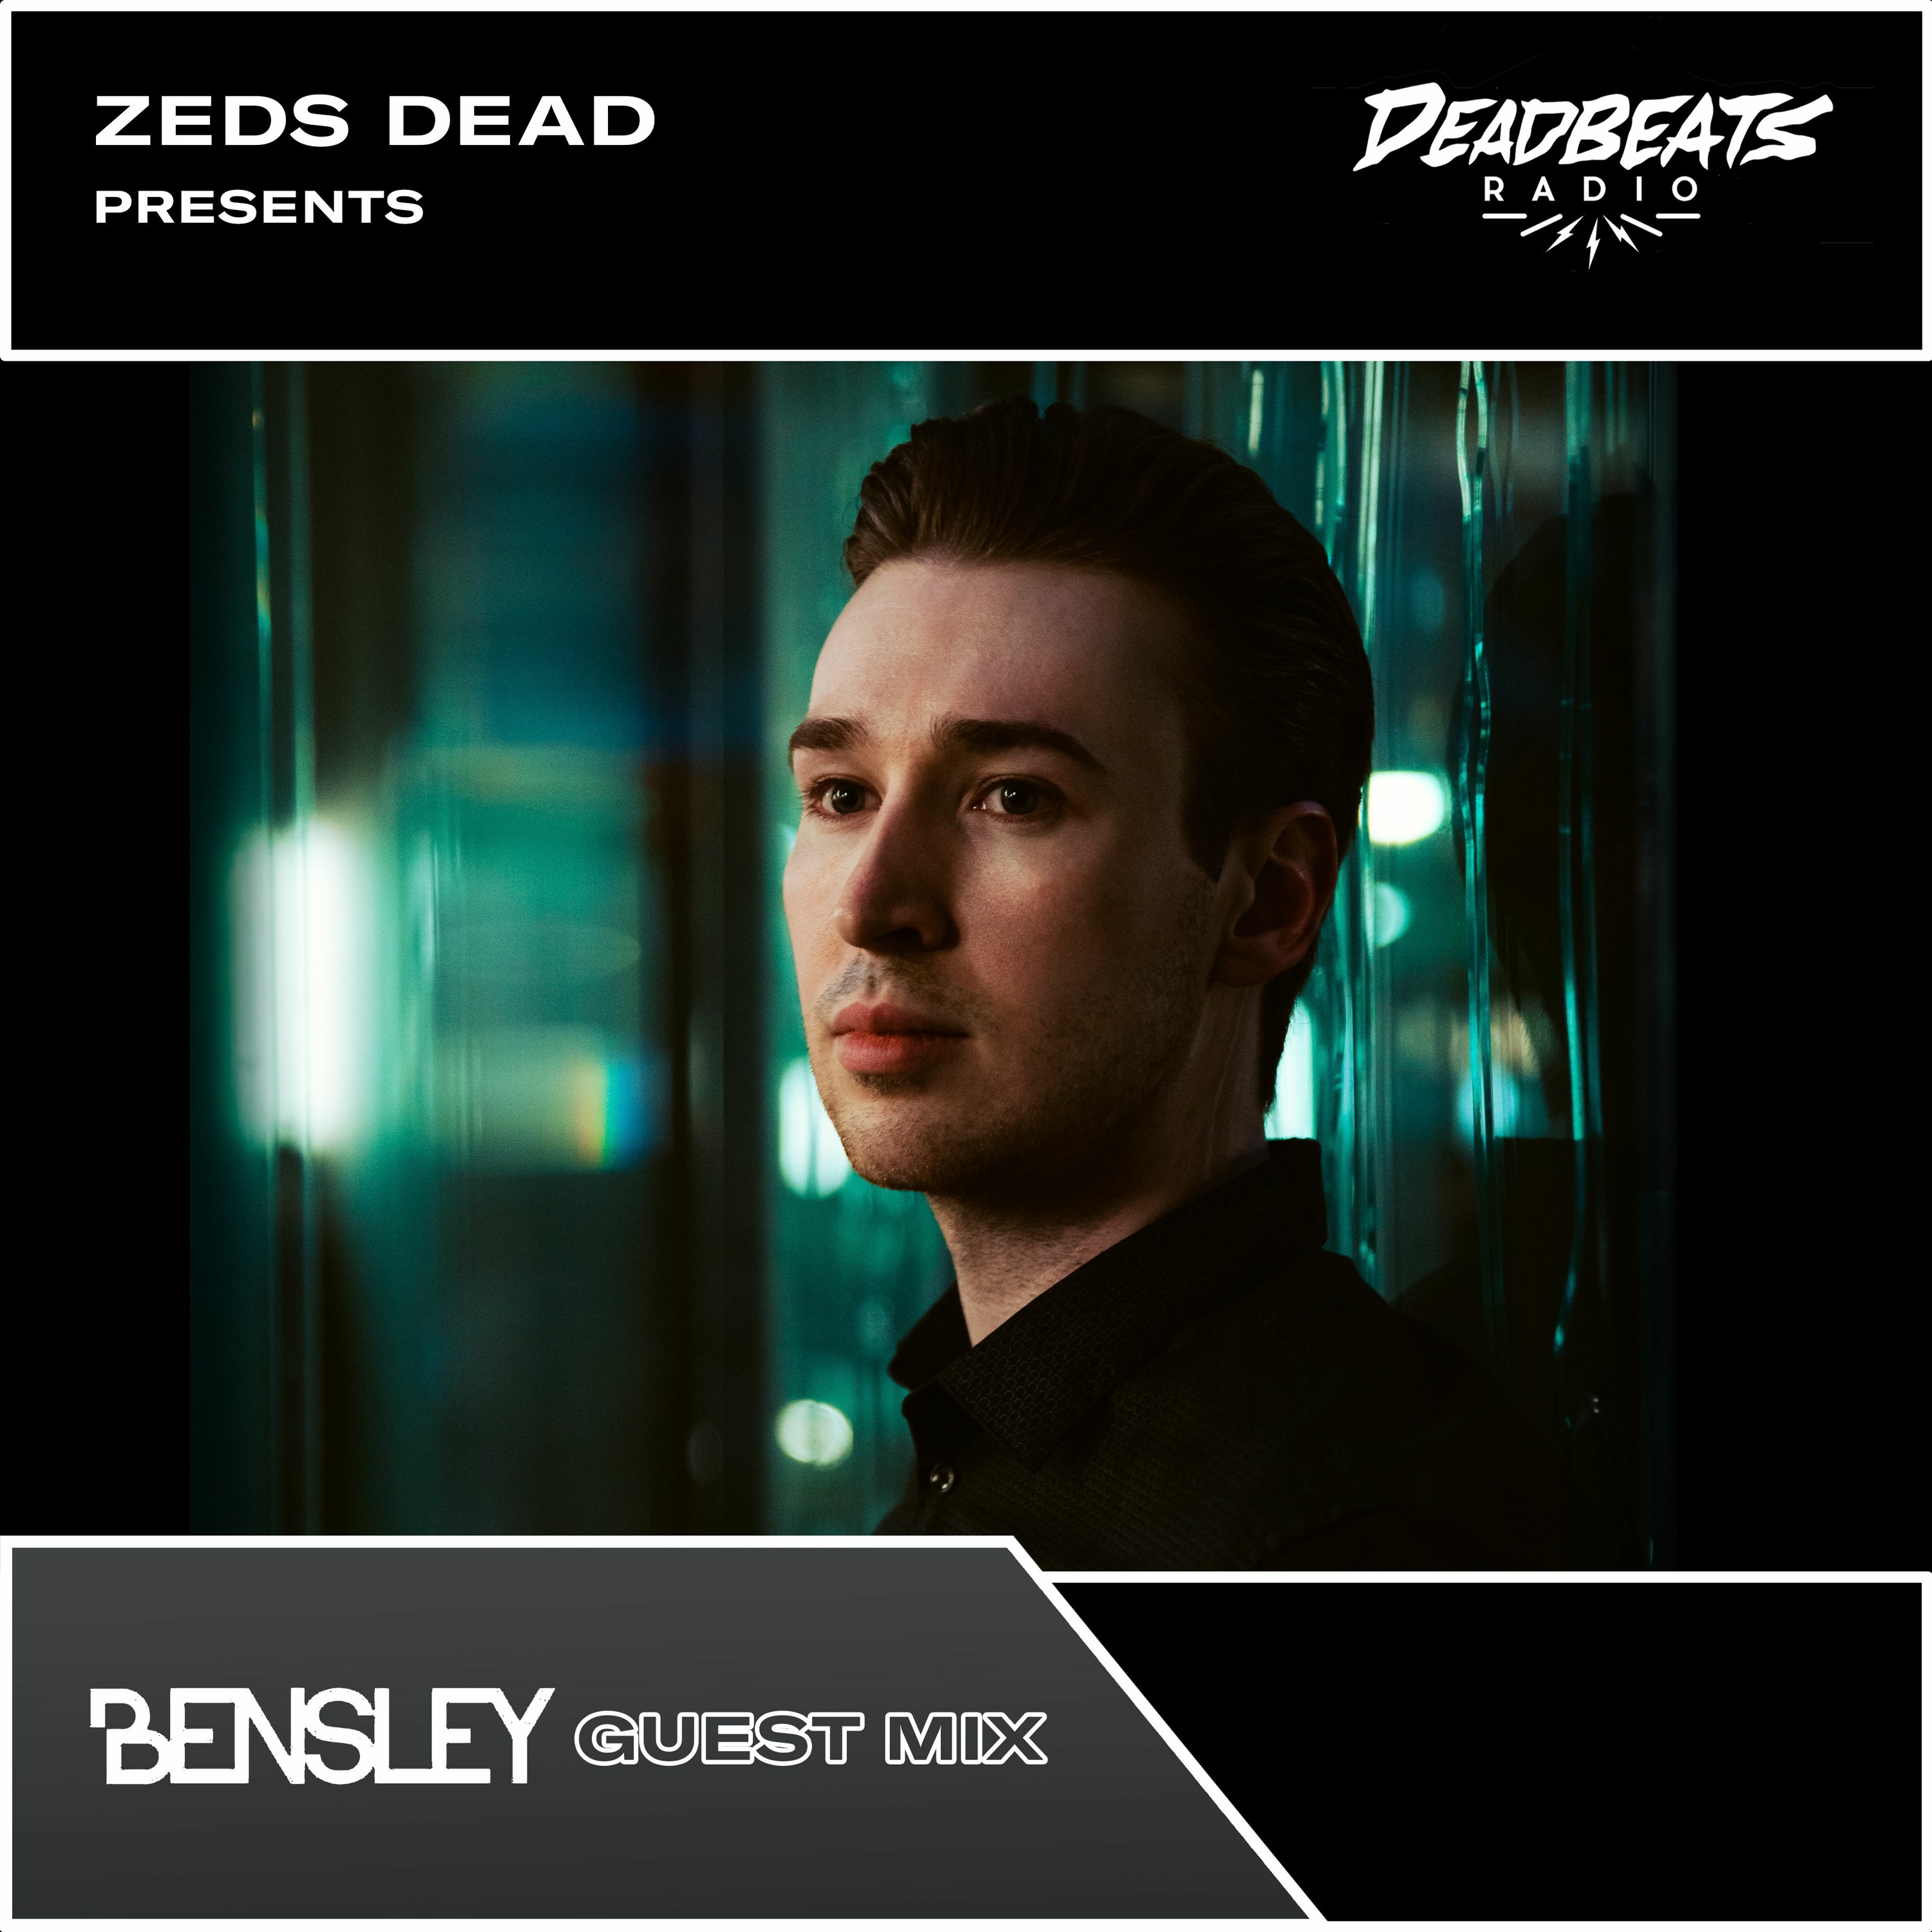 215 Deadbeats Radio with Zeds Dead // Bensley Guestmix